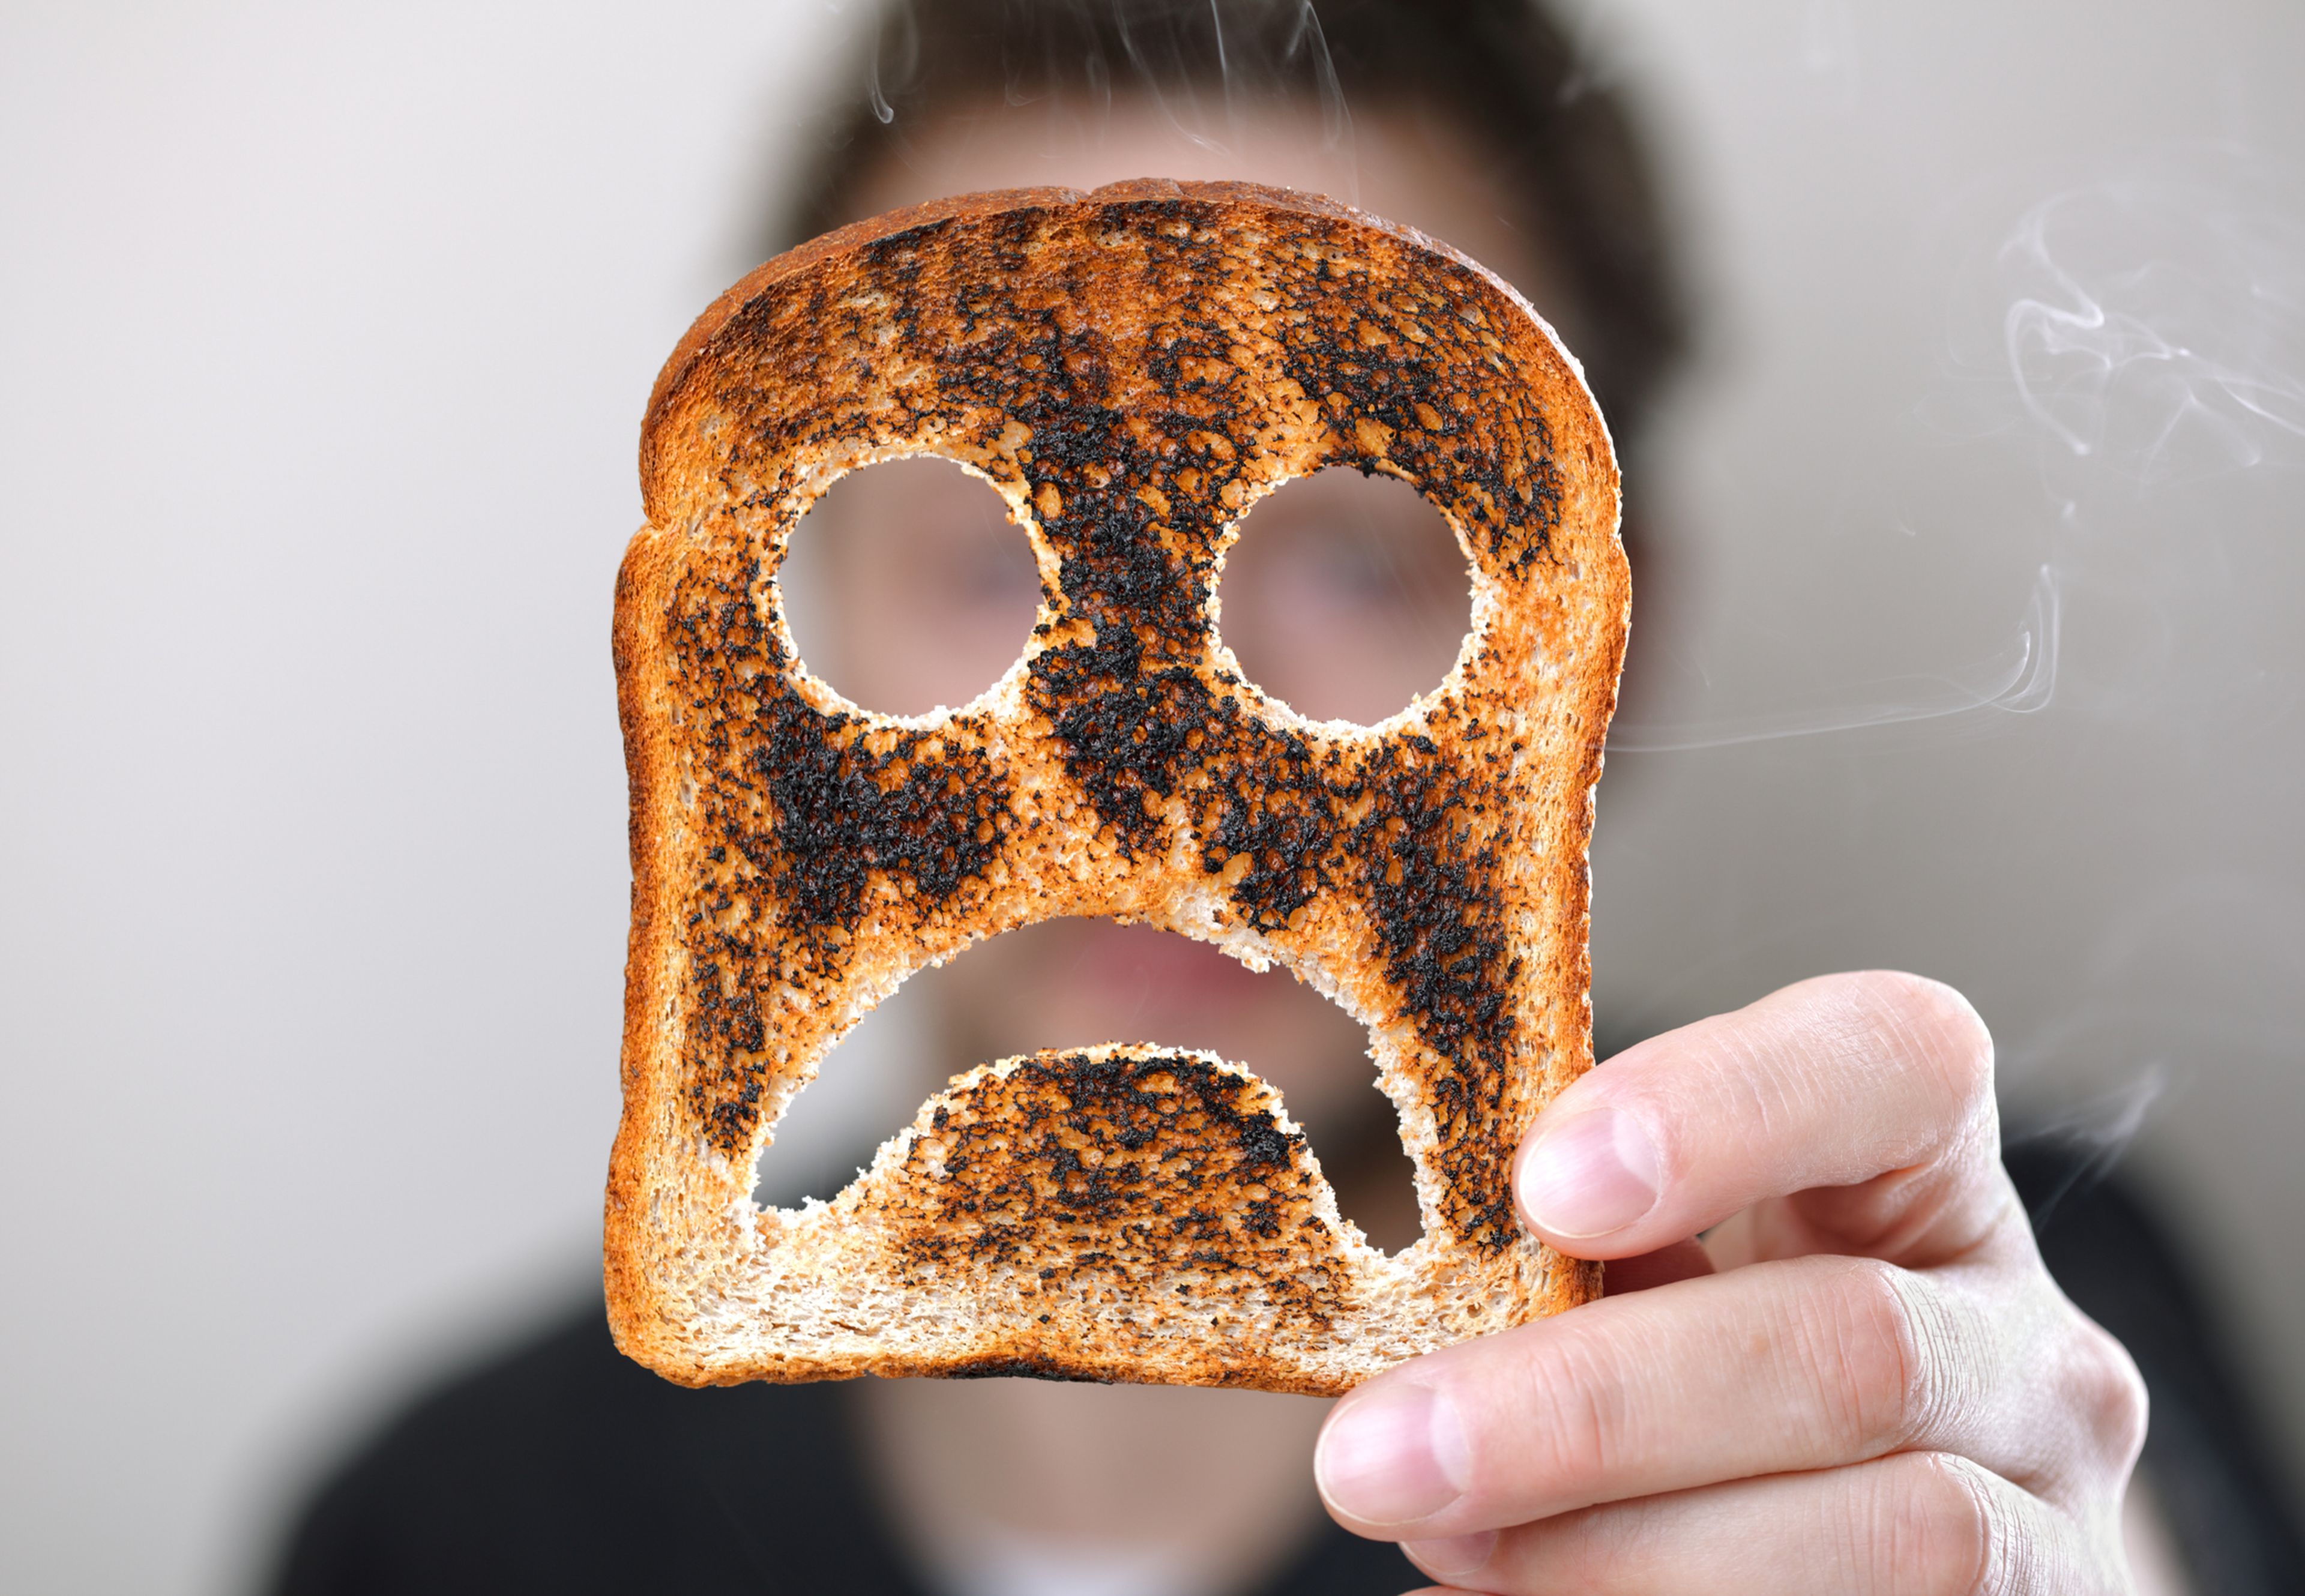 Por qué no deberías consumir comida quemada: los riesgos que esconde para tu salud